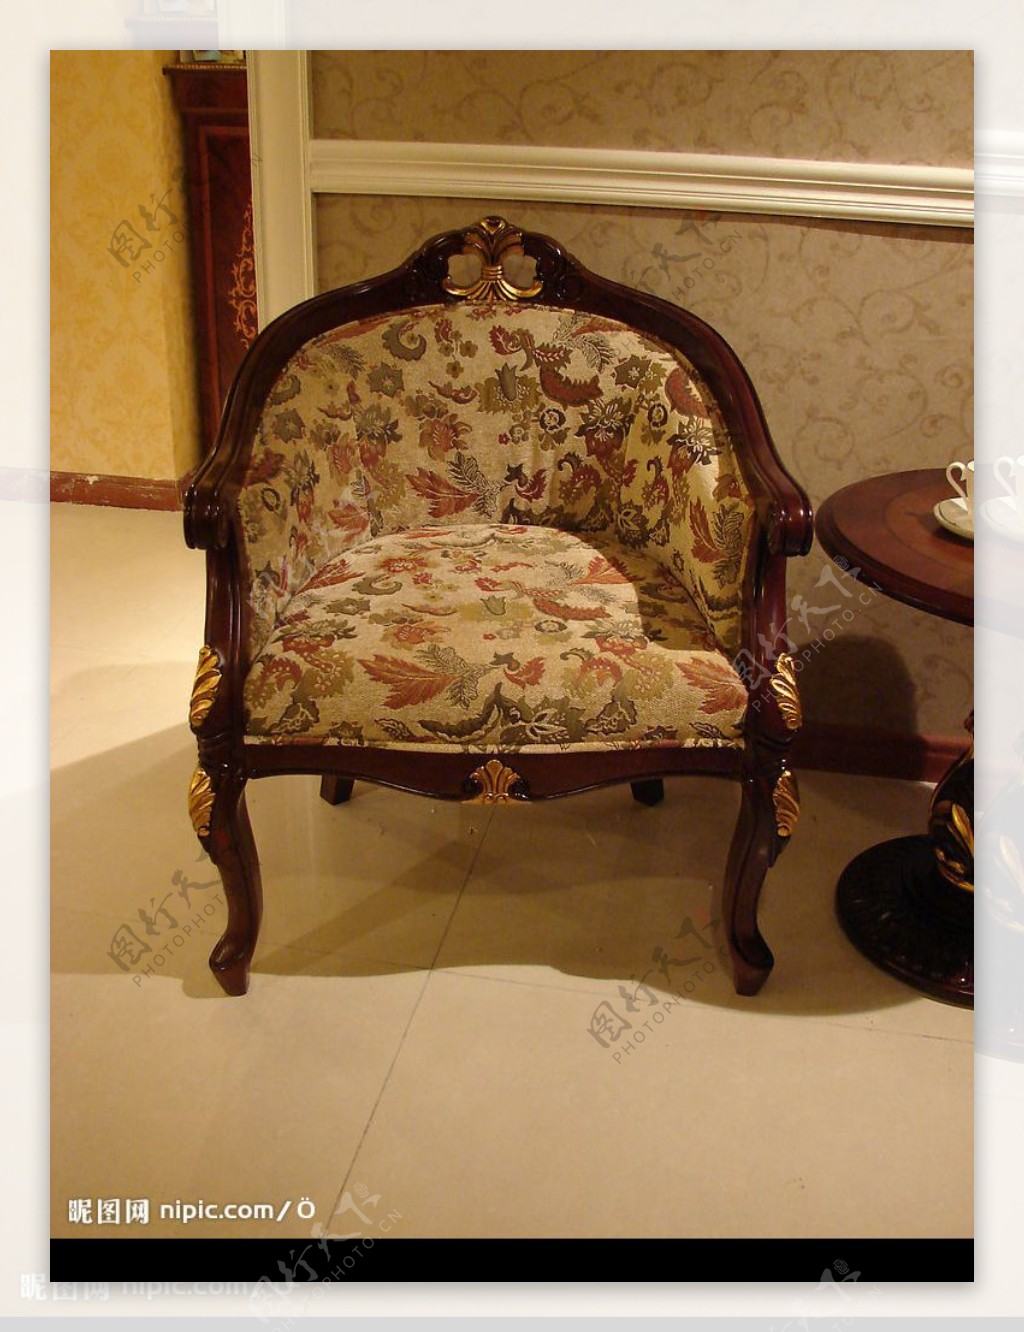 经典欧式家具椅子图片